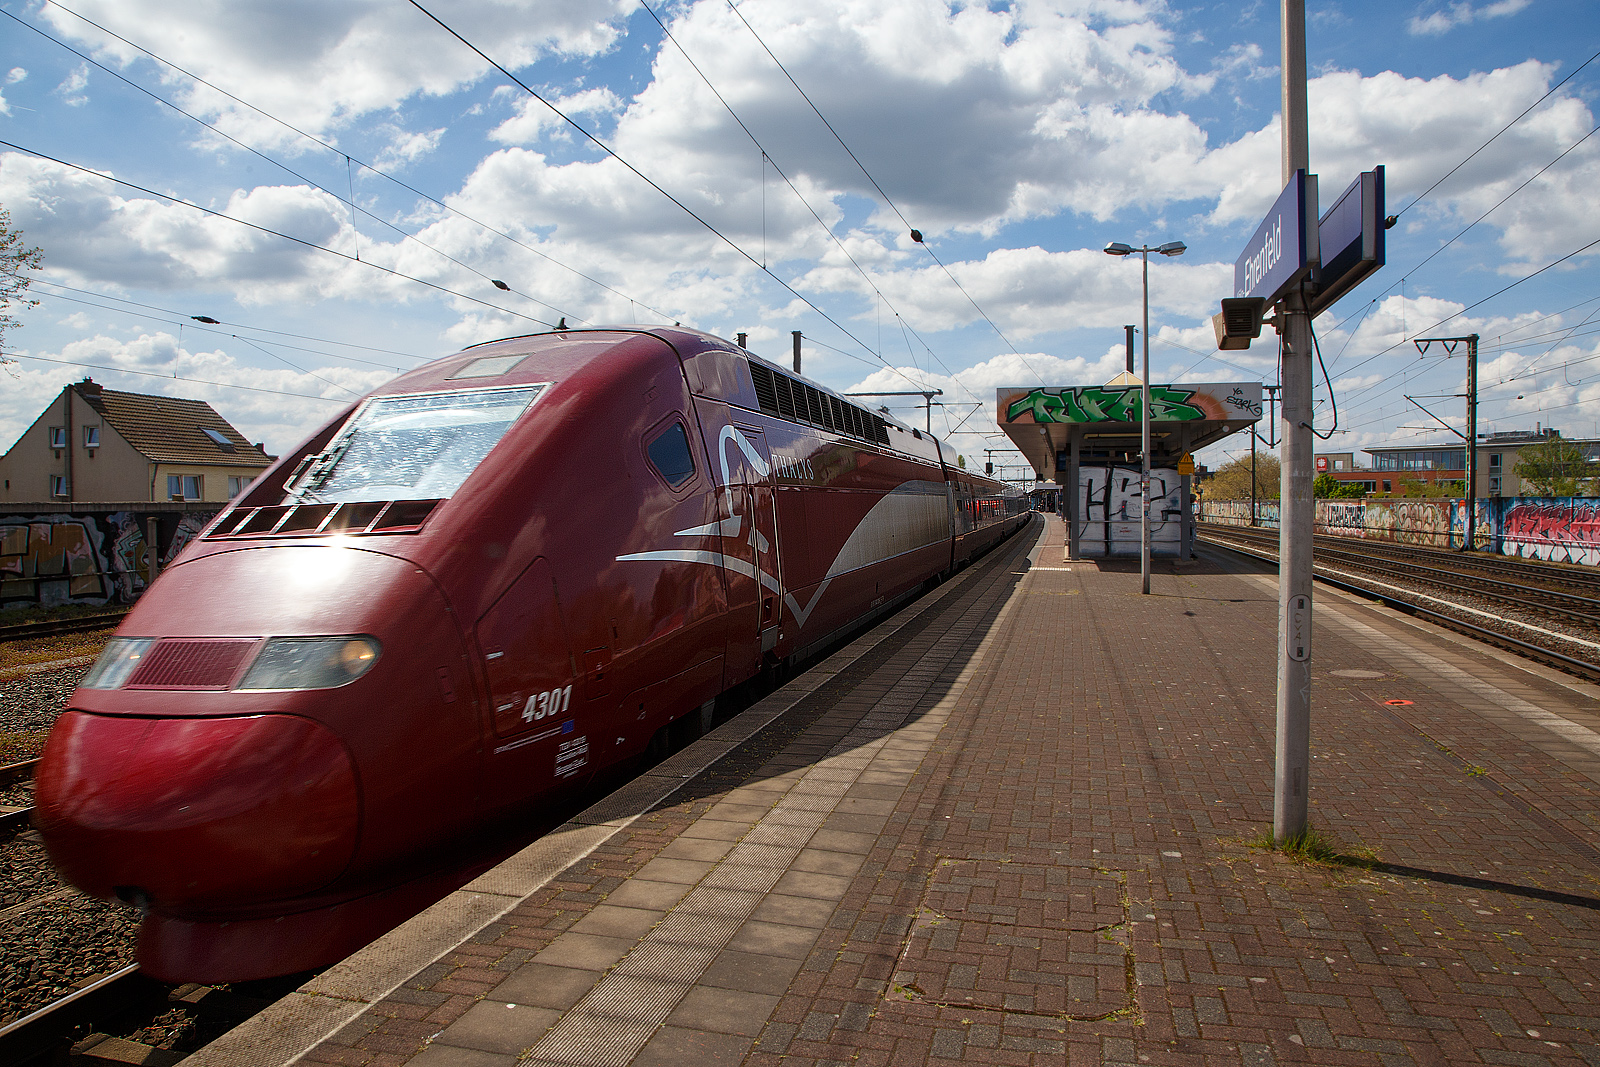 Der PBKA Thalys 4301 (TGV Series 43000) (93 88 0043 010-x B-TH etc.) fährt am 30.04.2023, als Thalys 9423 von Paris Gare du Nord (Paris Nord) via Bruxelles-Midi (Brüssel-Süd), Liège-Guillemins (Lüttich) und Aachen Hbf nach Köln Hbf, durch den Bahnhof Köln-Ehrenfeld in Richtung Köln Hbf, welchen er dann bald erreicht.